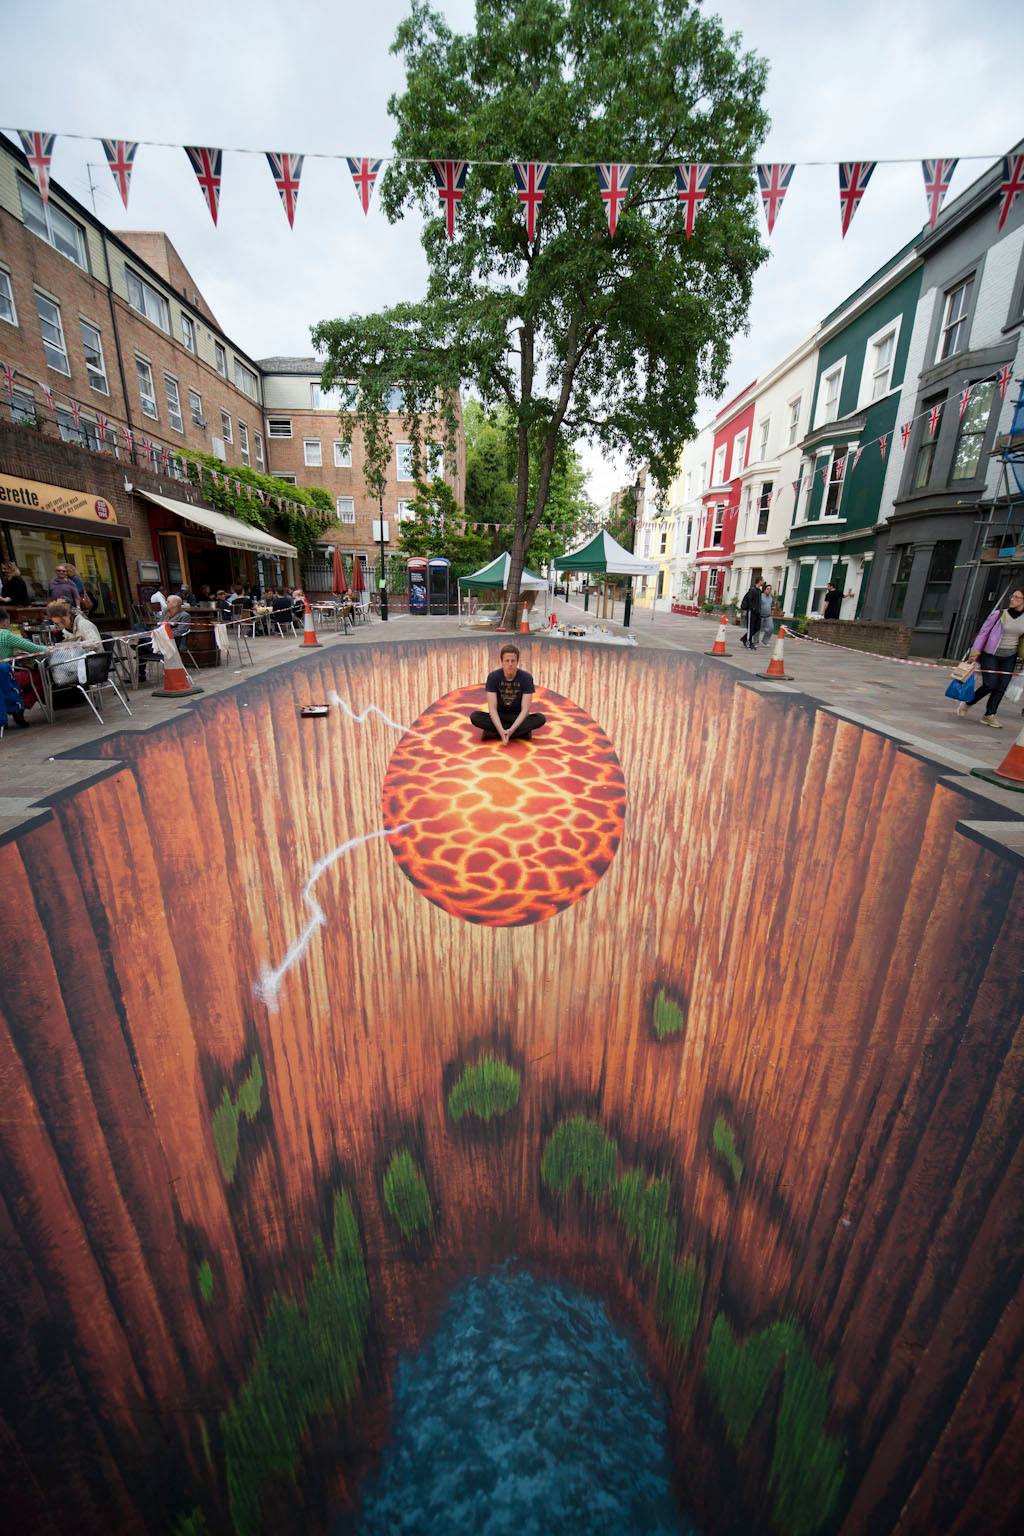 Elképesztő, térhatású street art alkotások